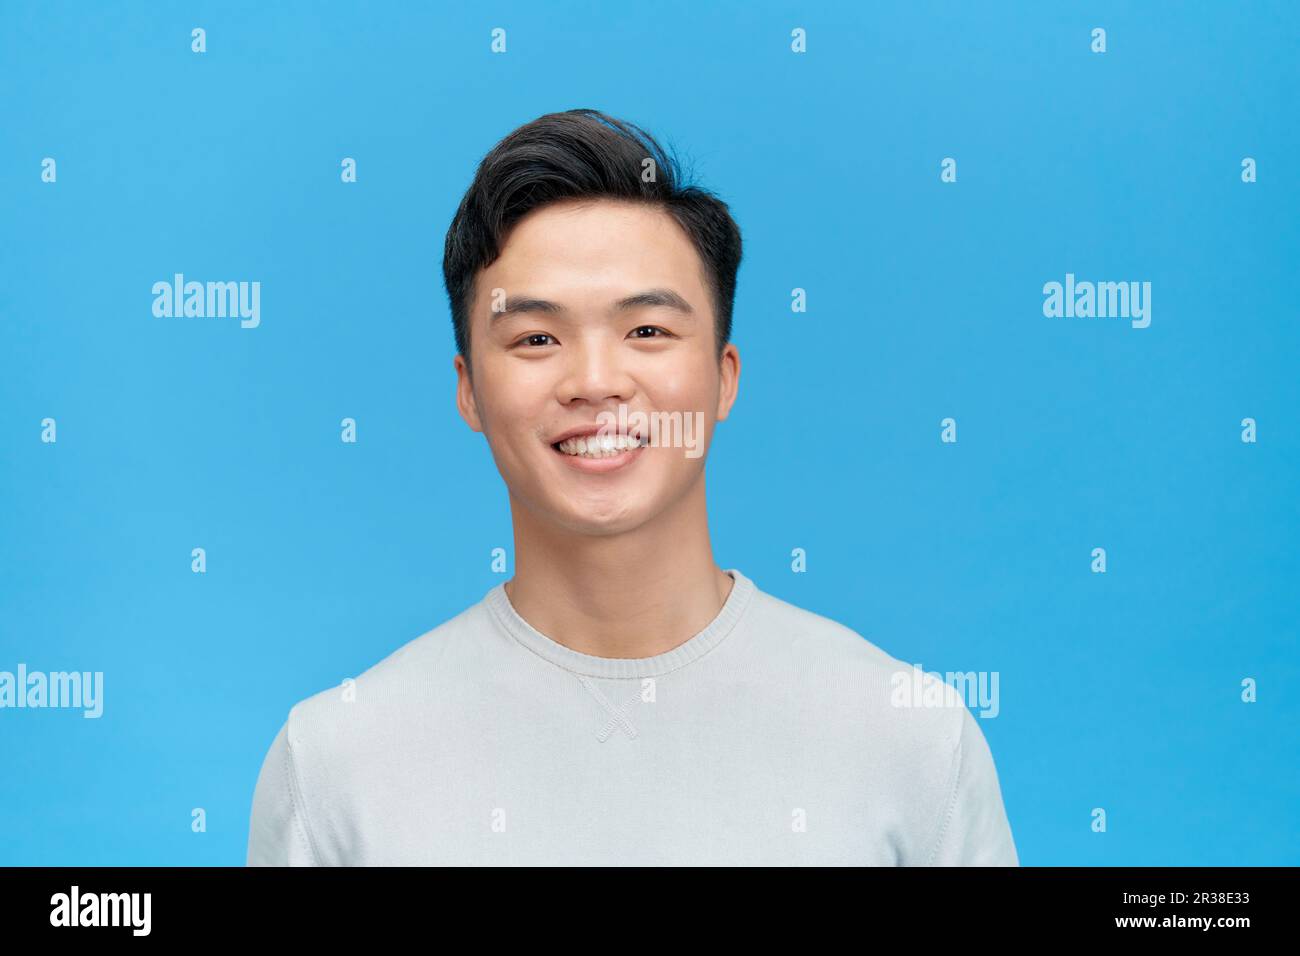 Ritratto di un bel giovane uomo sorridente contro sfondo blu Foto Stock